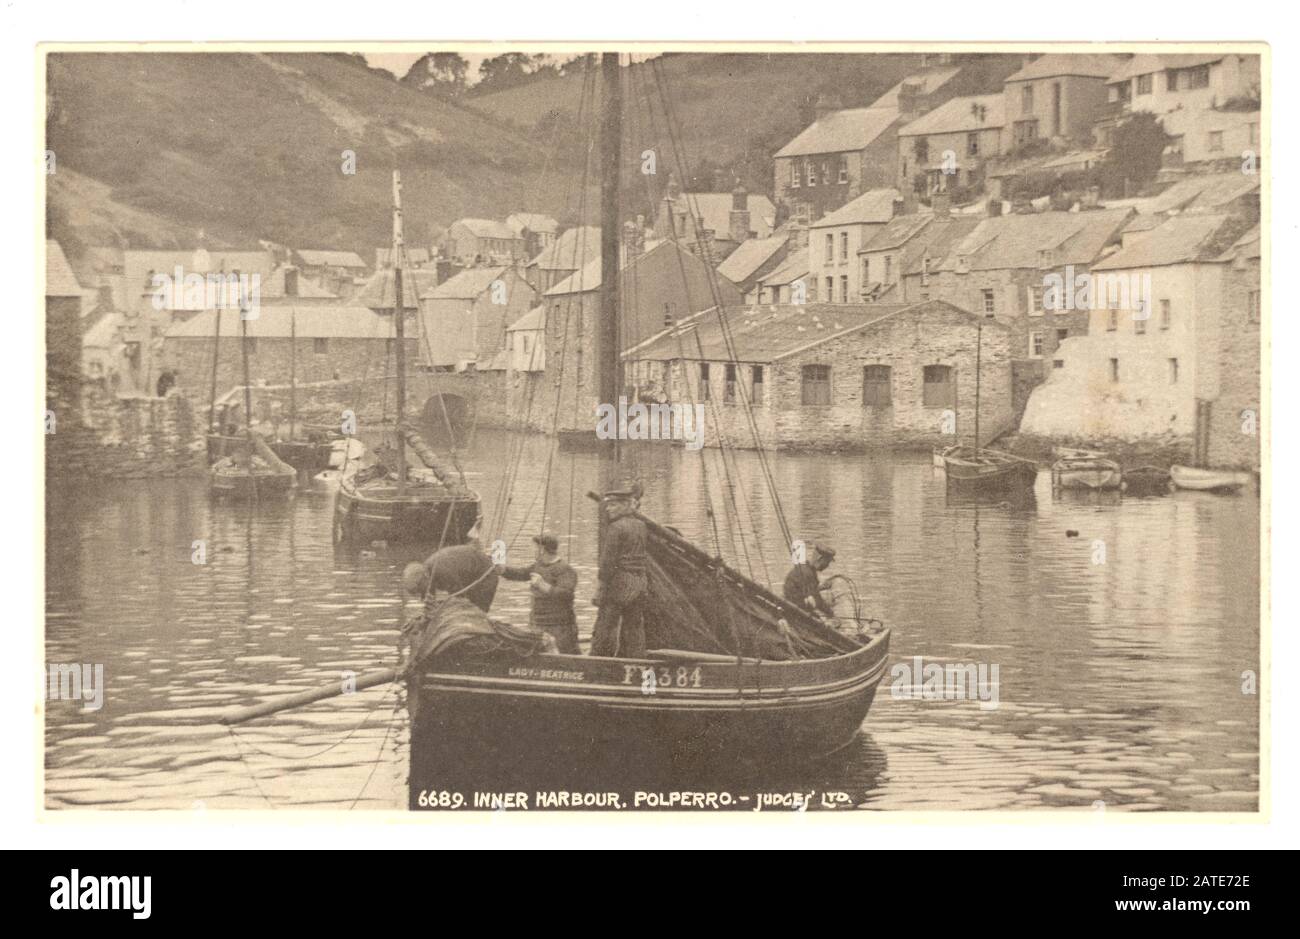 Cartolina dei primi anni '900 del pittoresco porto interno, con pescatore e la sua barca, Polperro, Cornovaglia, Inghilterra, Regno Unito circa anni '20 Foto Stock